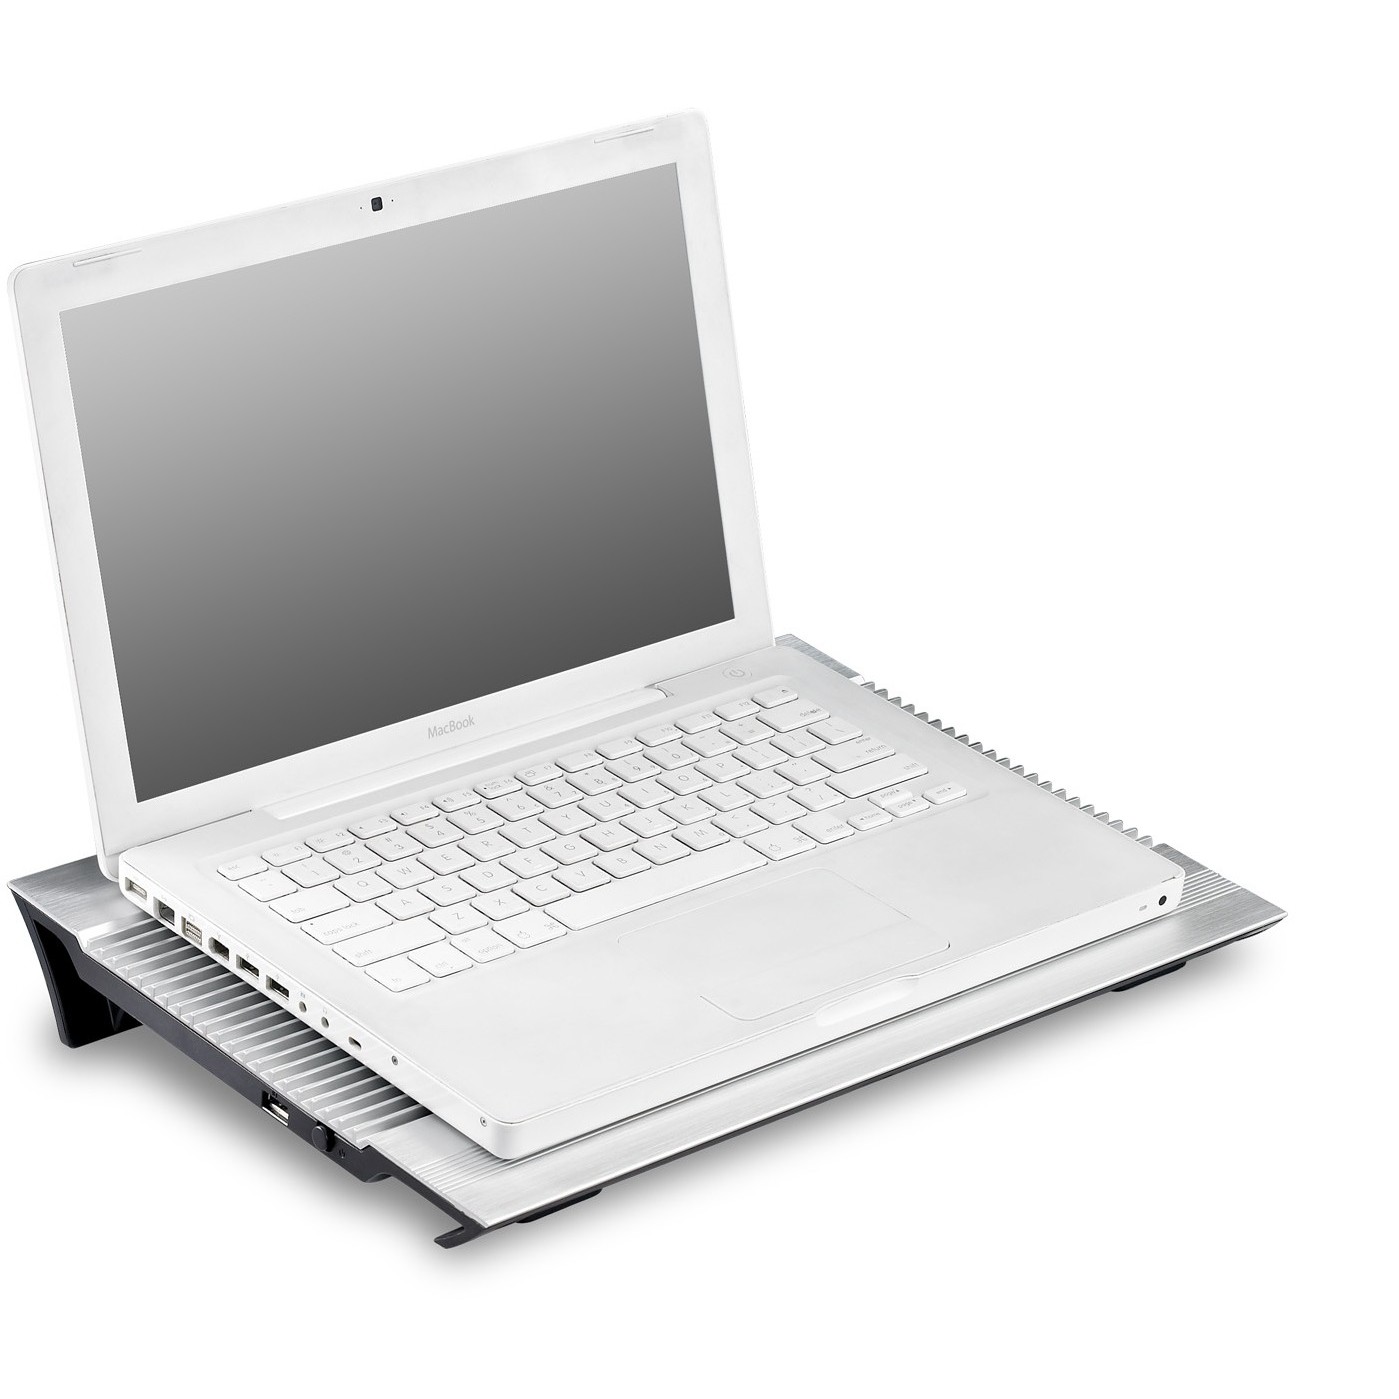 Подставка Для Ноутбука Deepcool N65 Купить